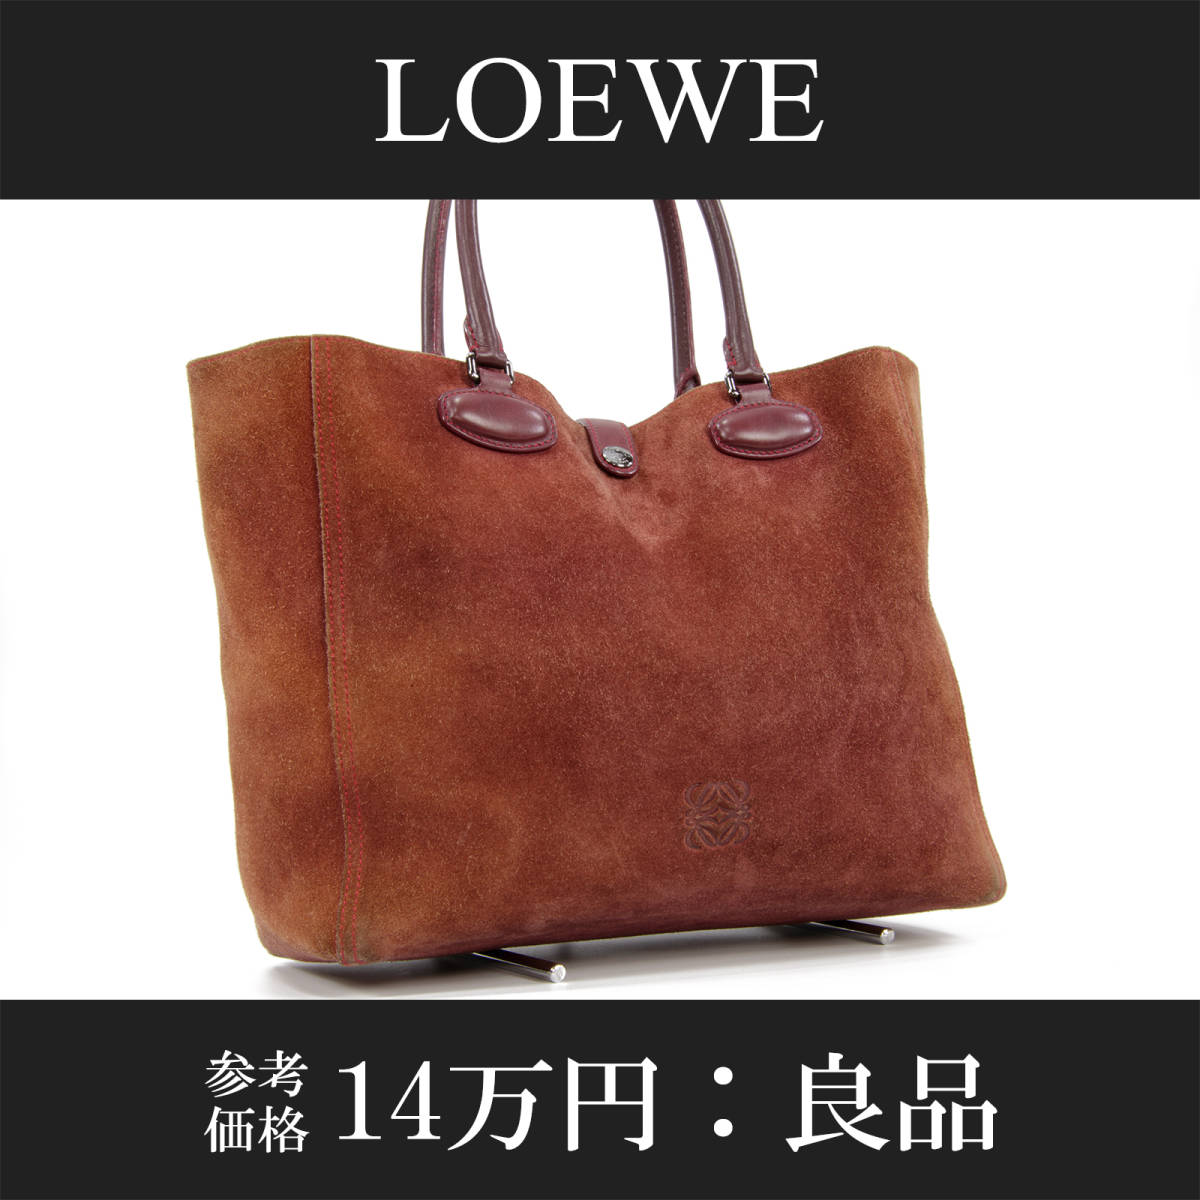 【全額返金保証・送料無料・良品】LOEWE・ロエベ・トートバッグ(レオ・人気・A4・女性・メンズ・男性・茶色・ブラウン・鞄・バック・A737)